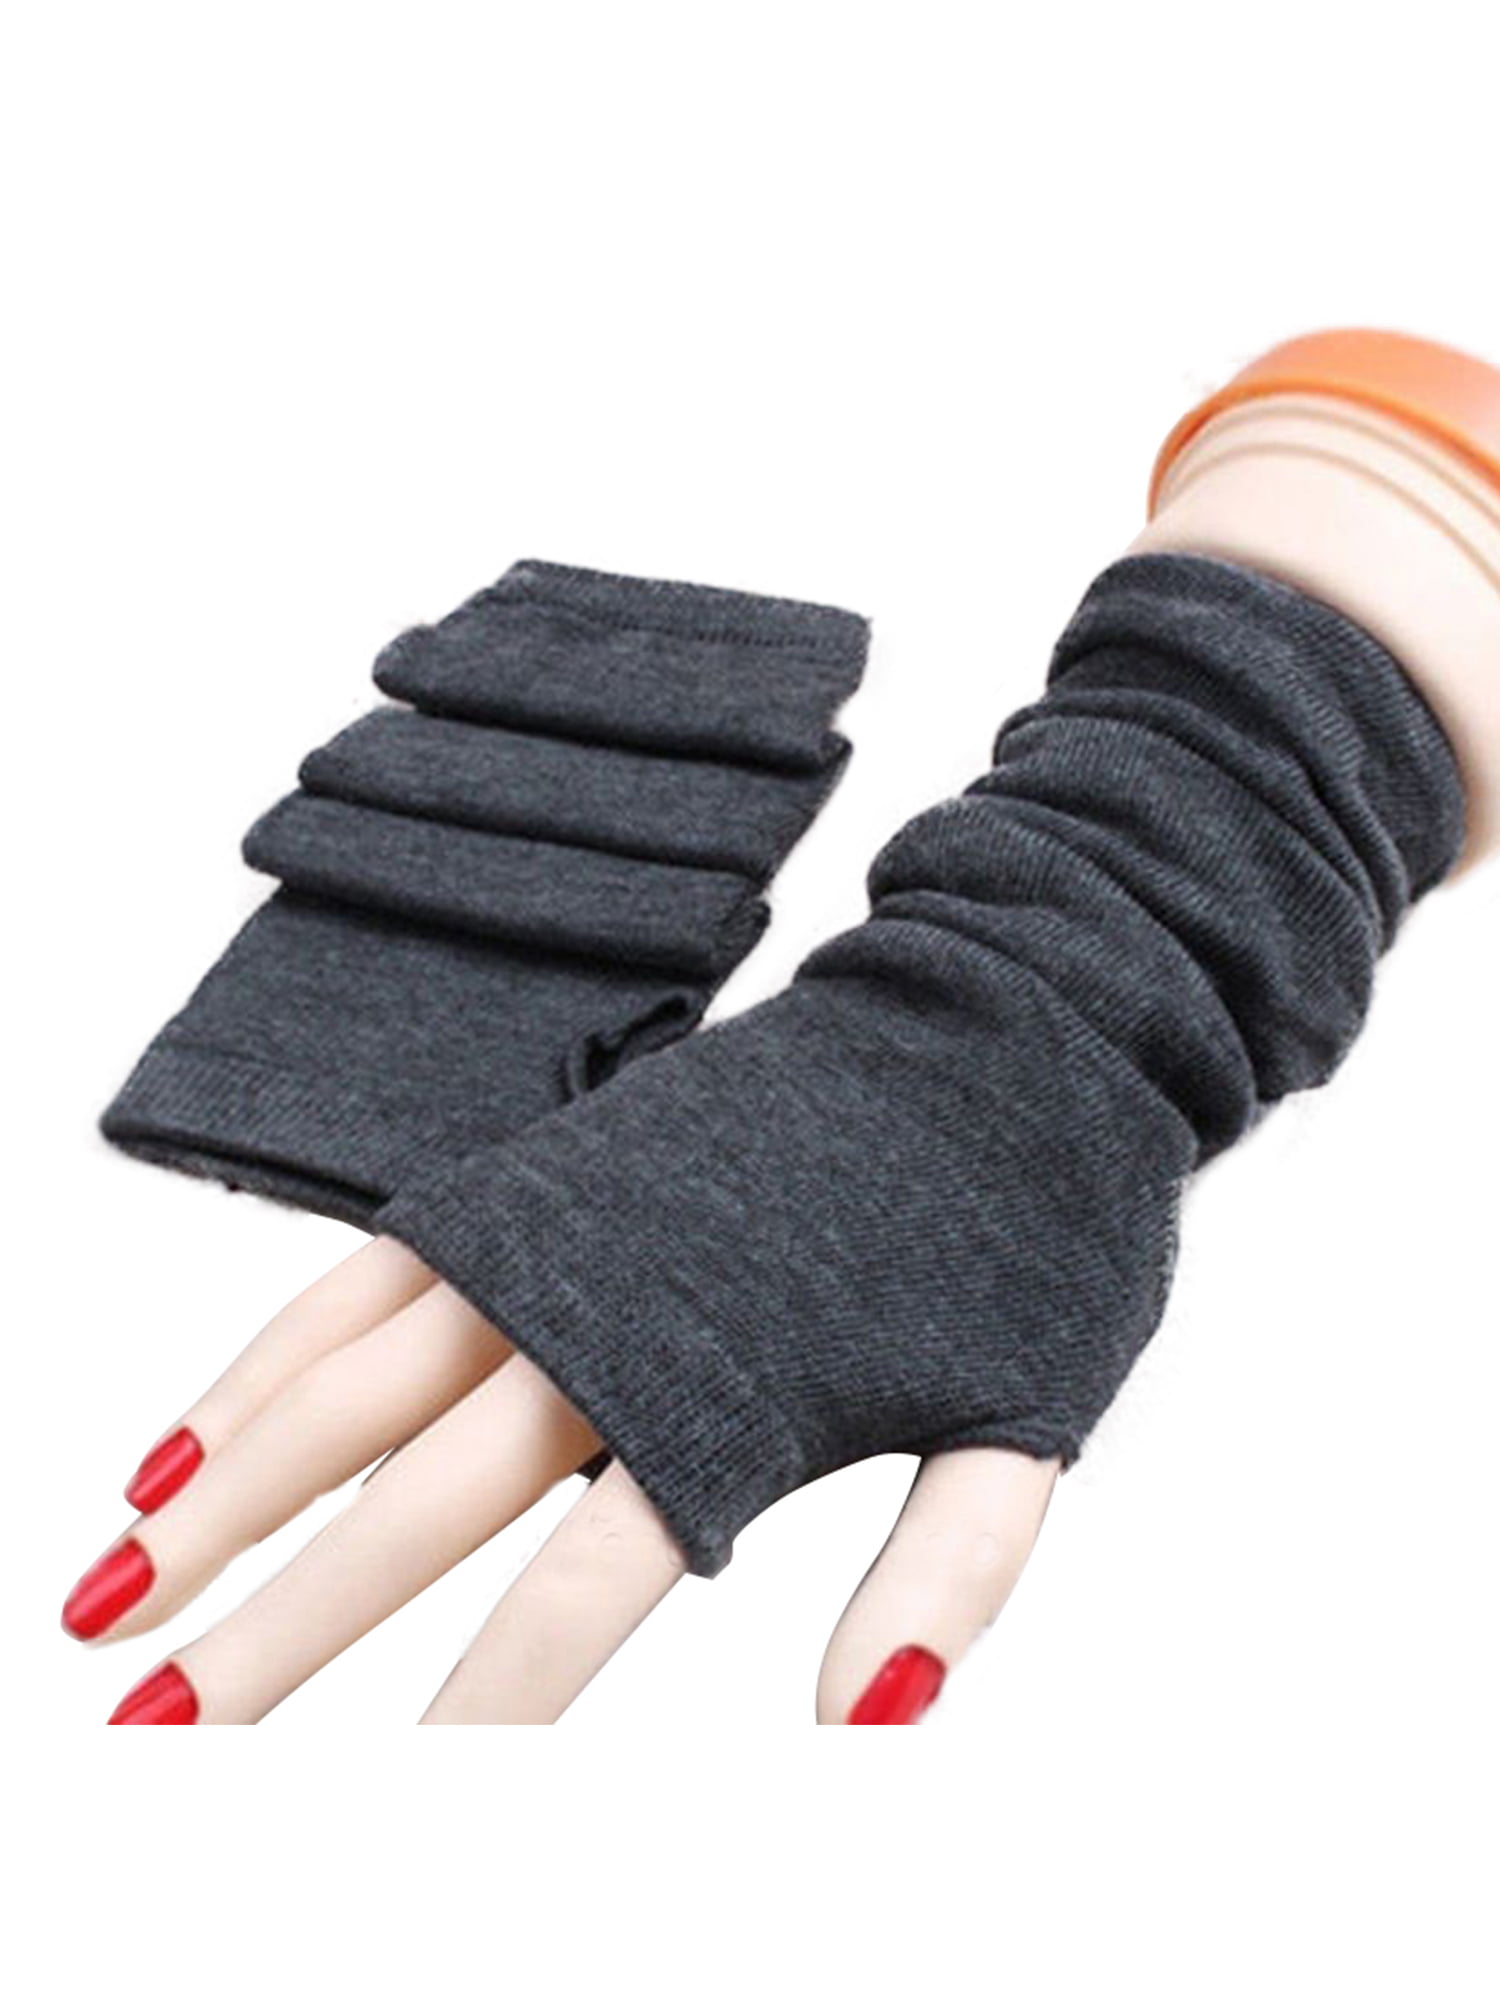 Flammi Womens Knit Arm Warmers Wool Fingerless Gloves Warm Thumb Hole Mittens